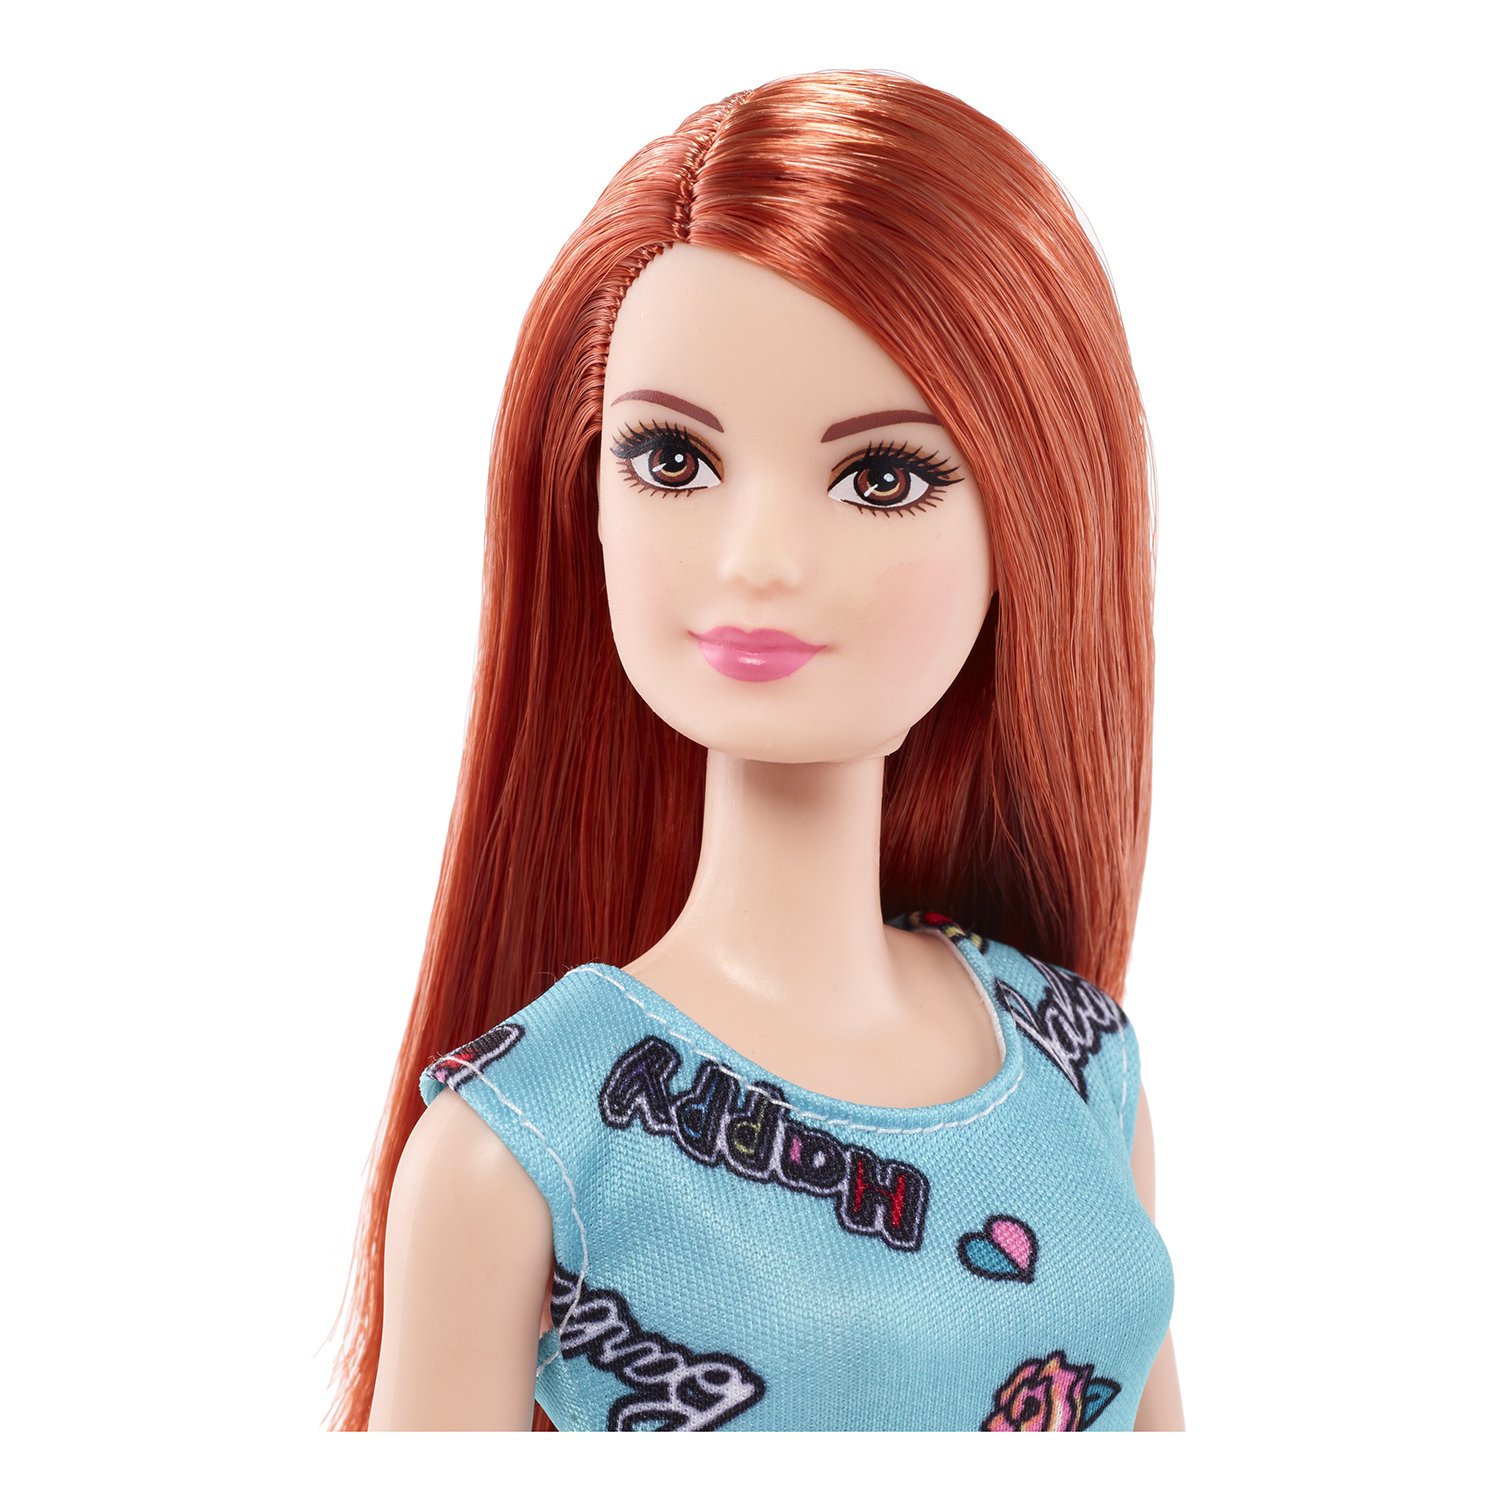 Кукла Barbie в бирюзовом платье с радугой, 29 см, FJF18